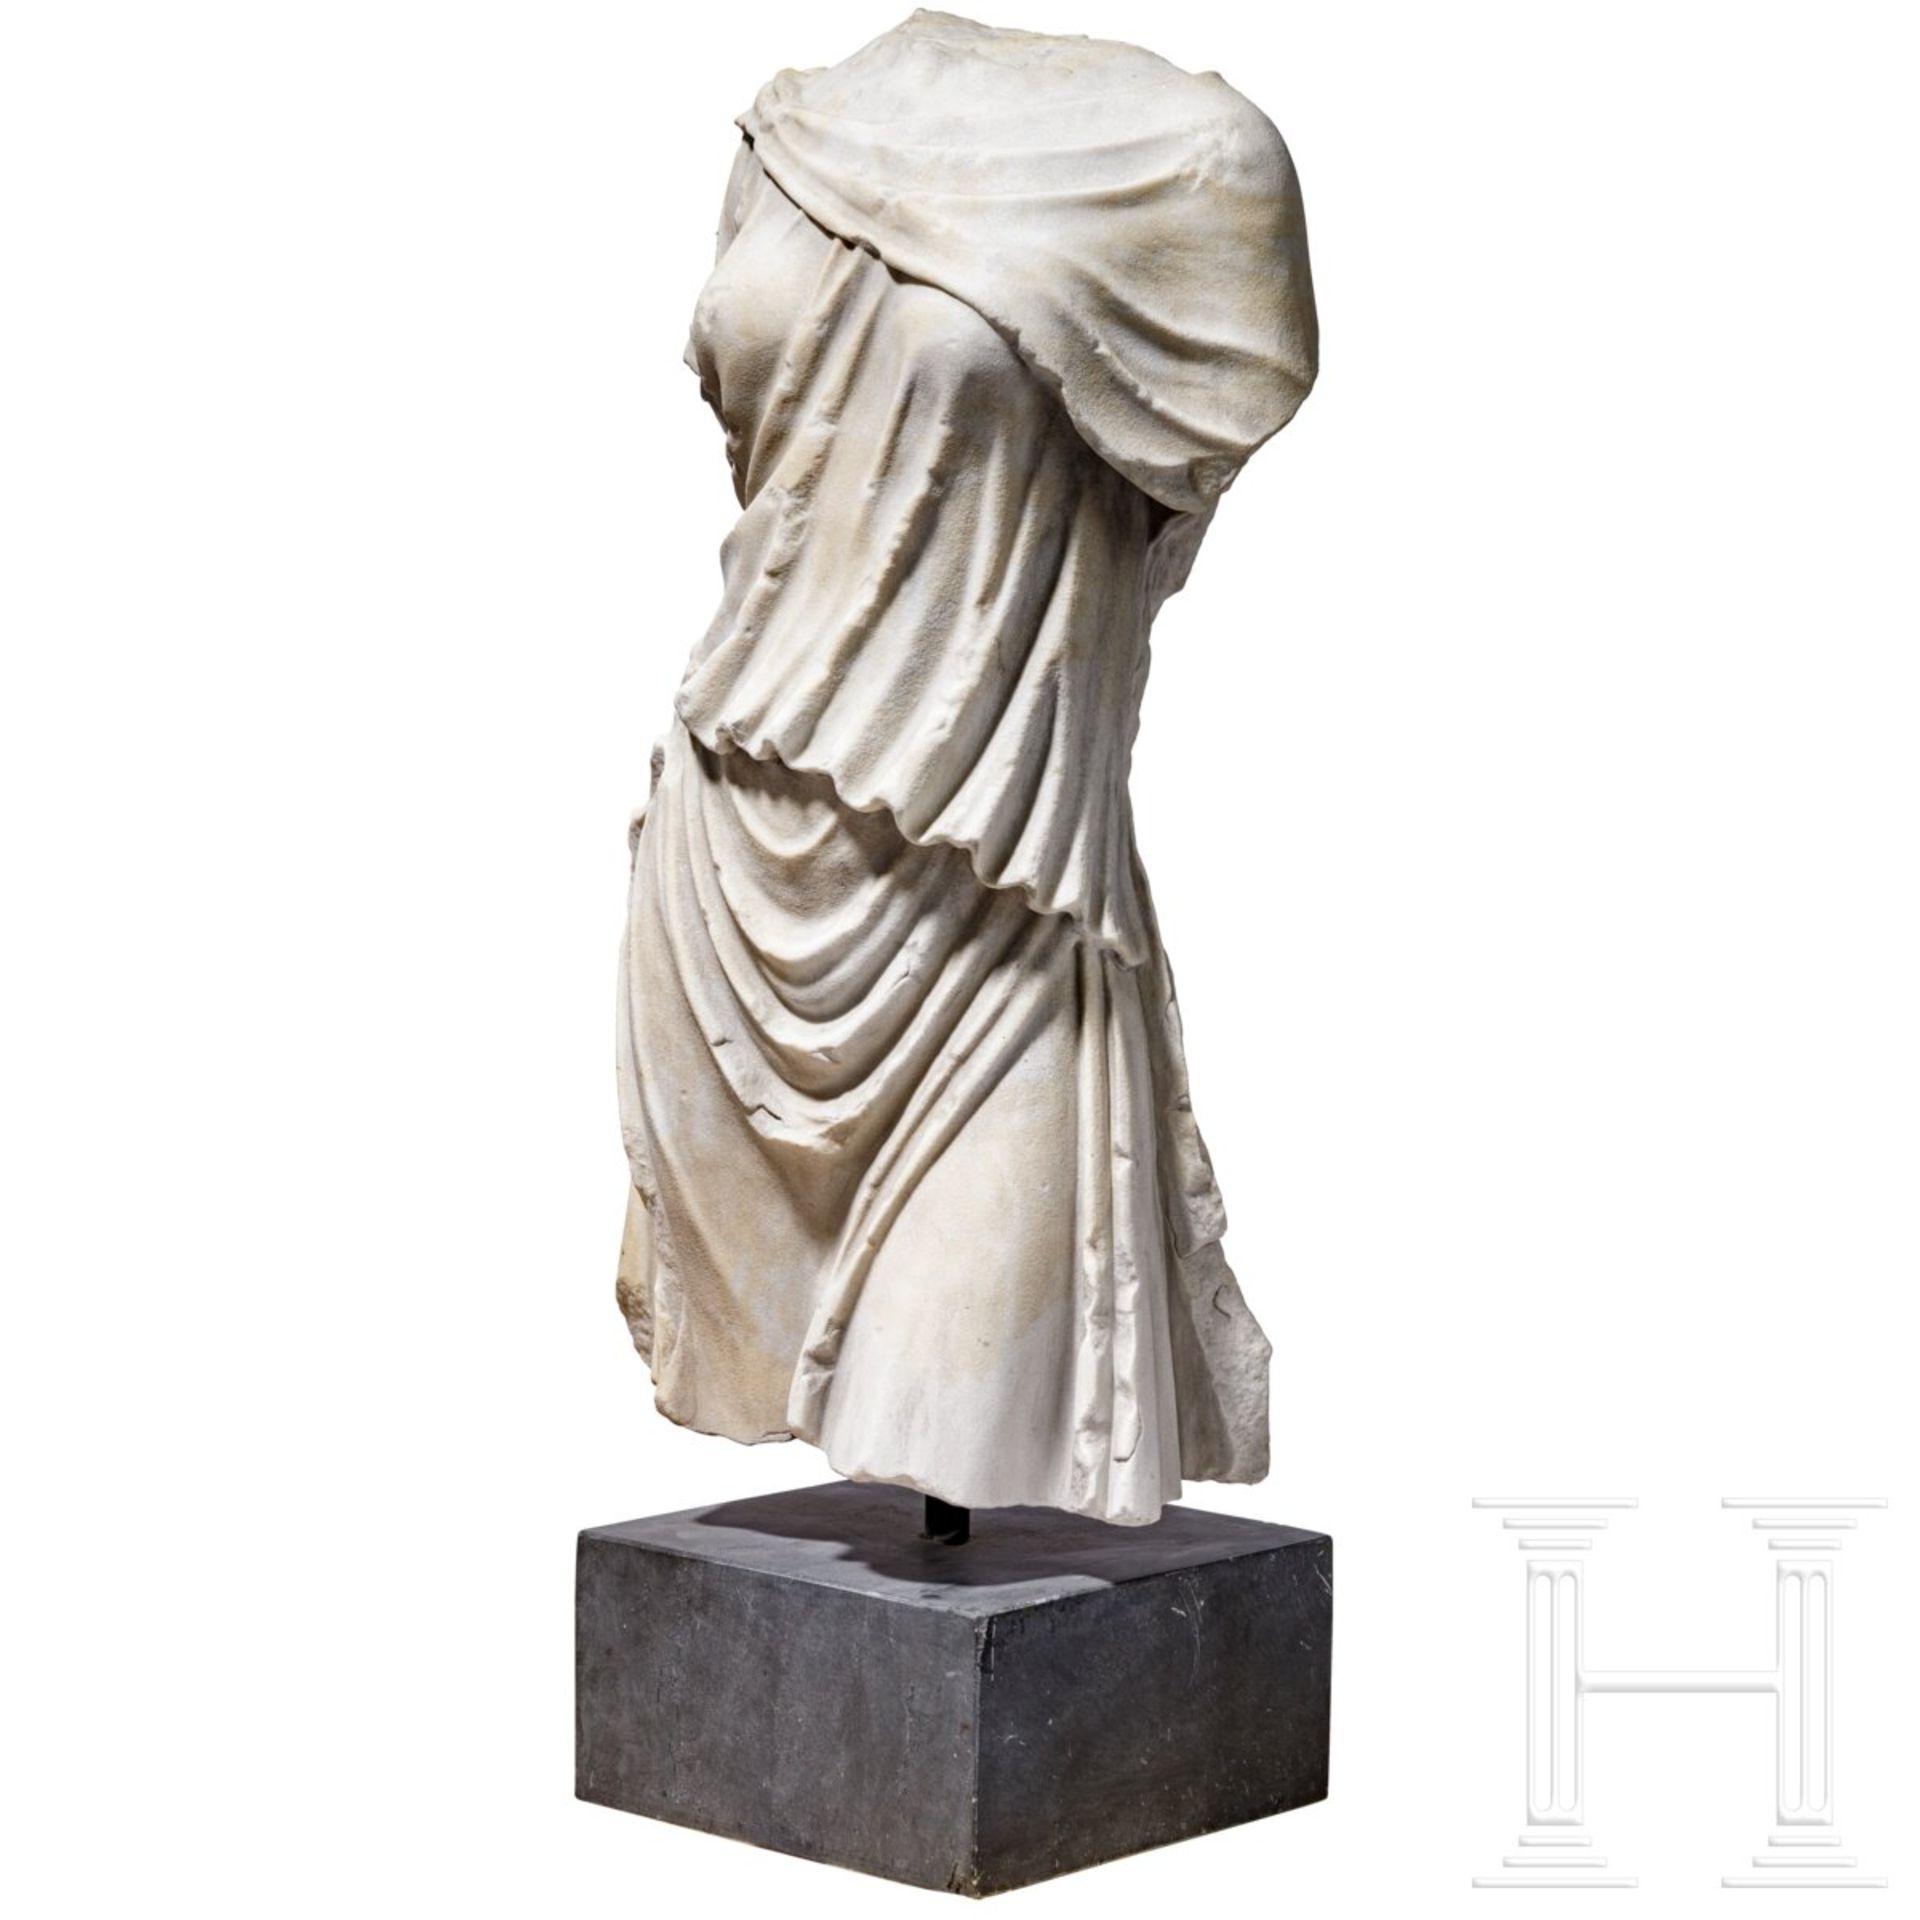 Klassizistischer Marmortorso nach dem Vorbild einer antiken Artemis-Statue, um 1800 - frühes 19. Jhd - Image 3 of 7